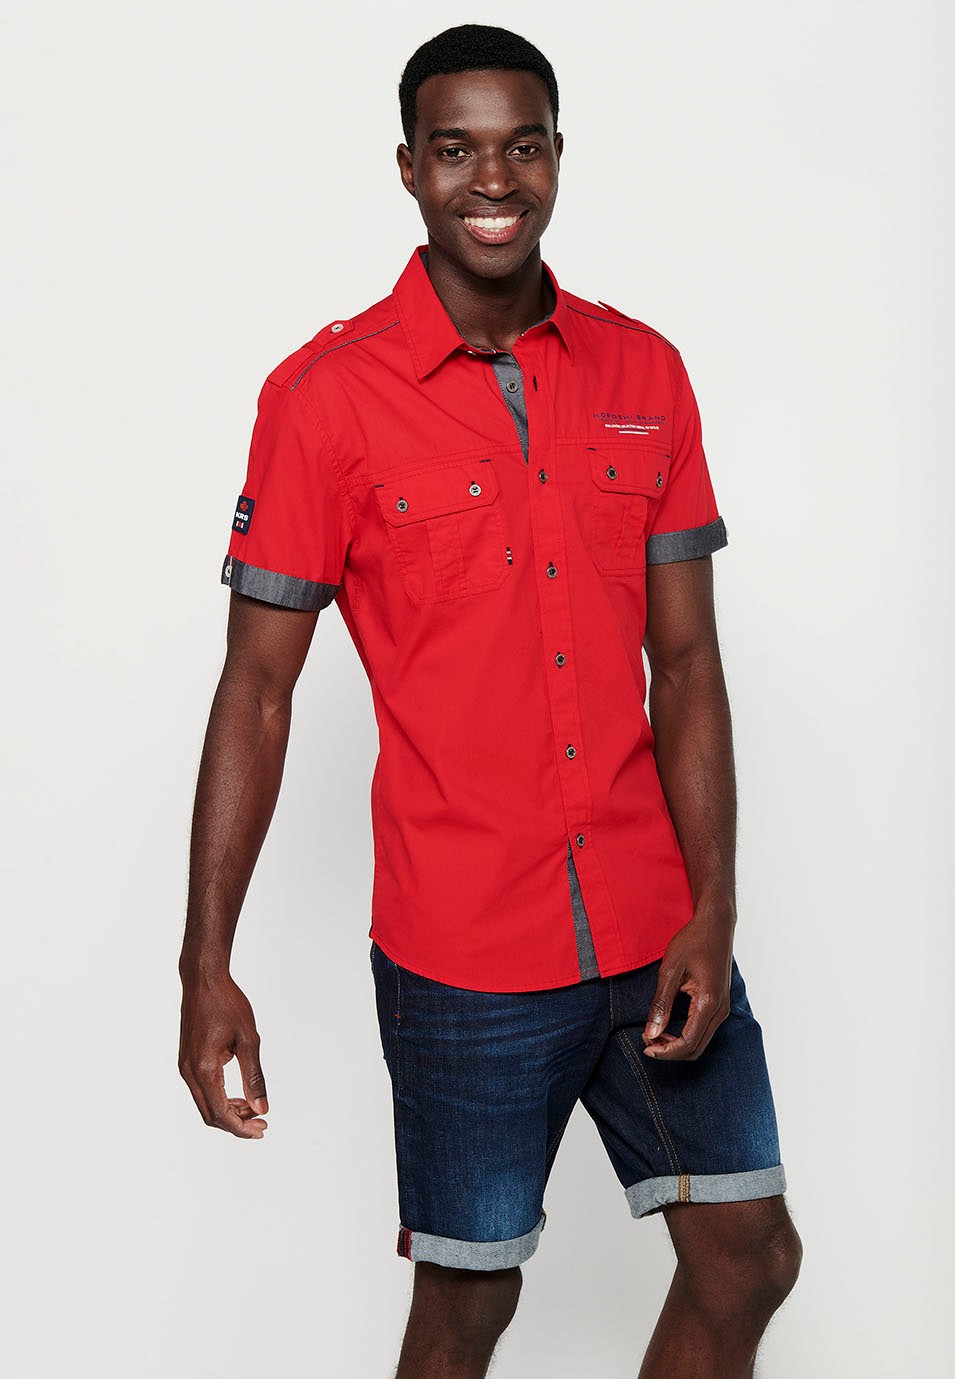 Chemise en coton, manches courtes, détails épaules, couleur rouge pour homme